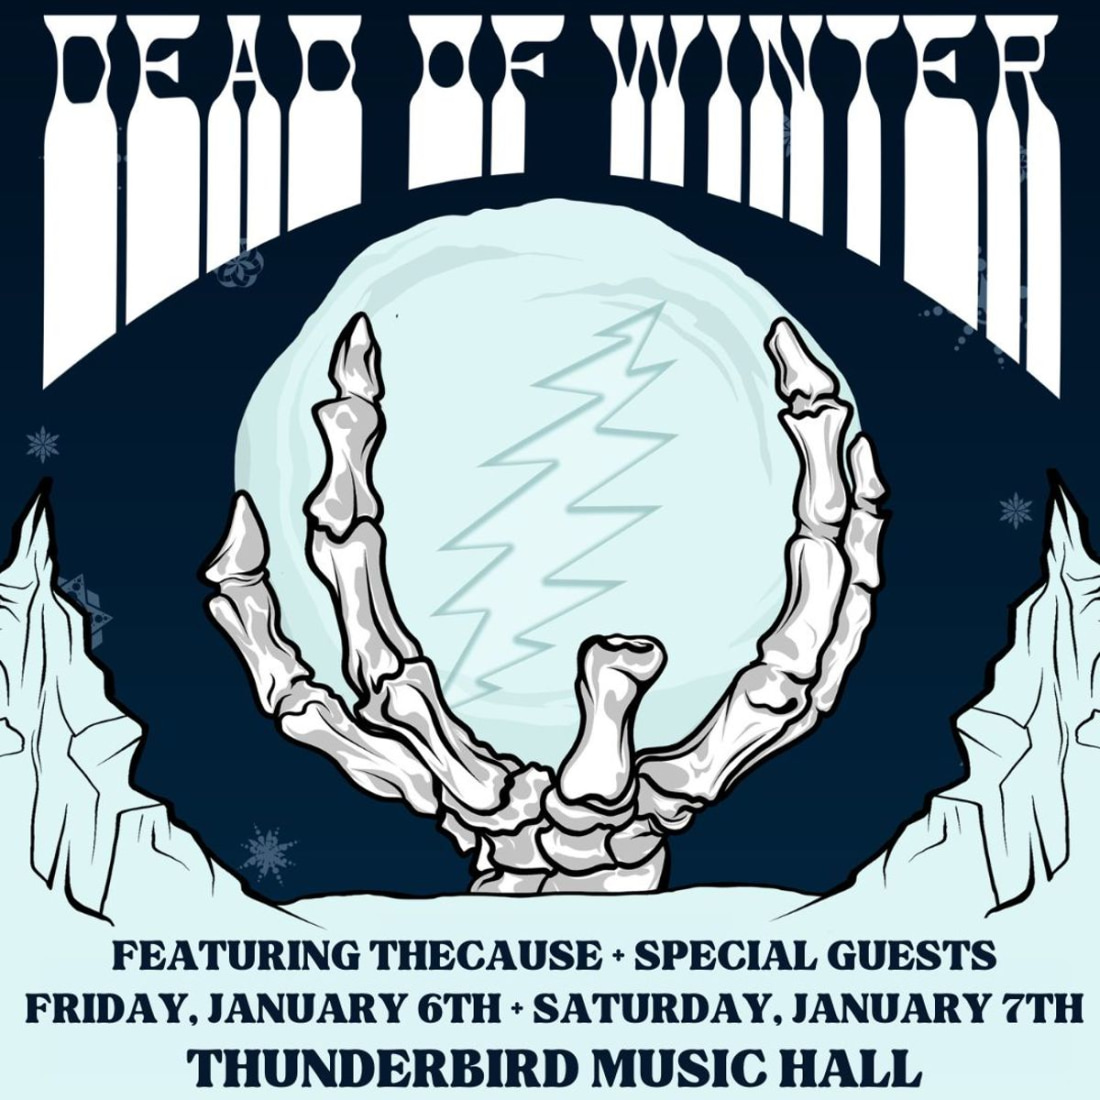 The Dead of Winter: Early Dead